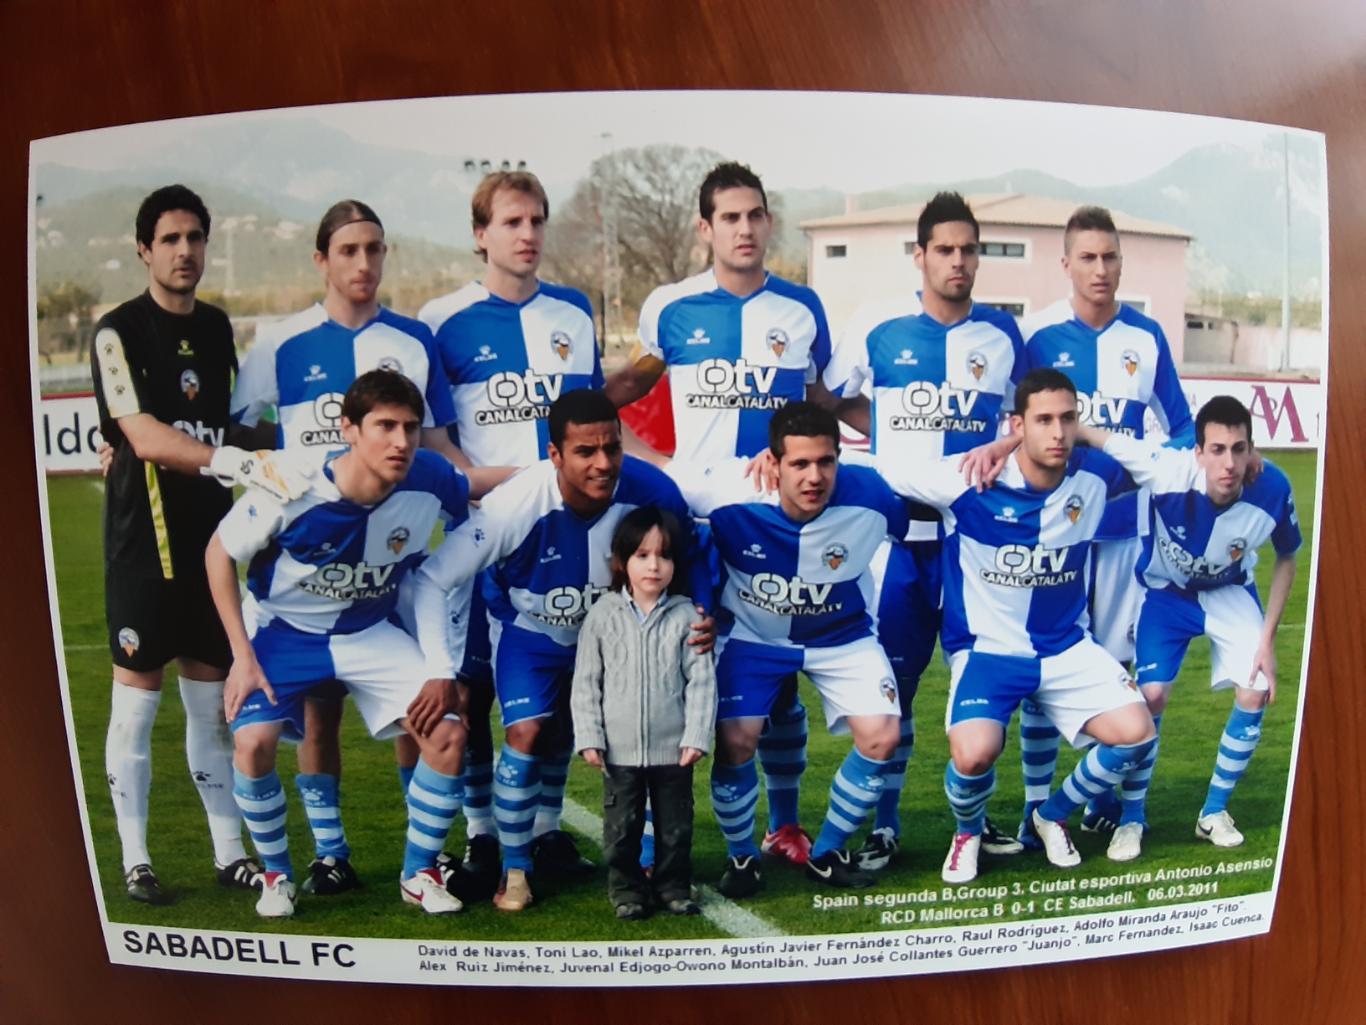 SABADELL FC 2011 (SPAIN)